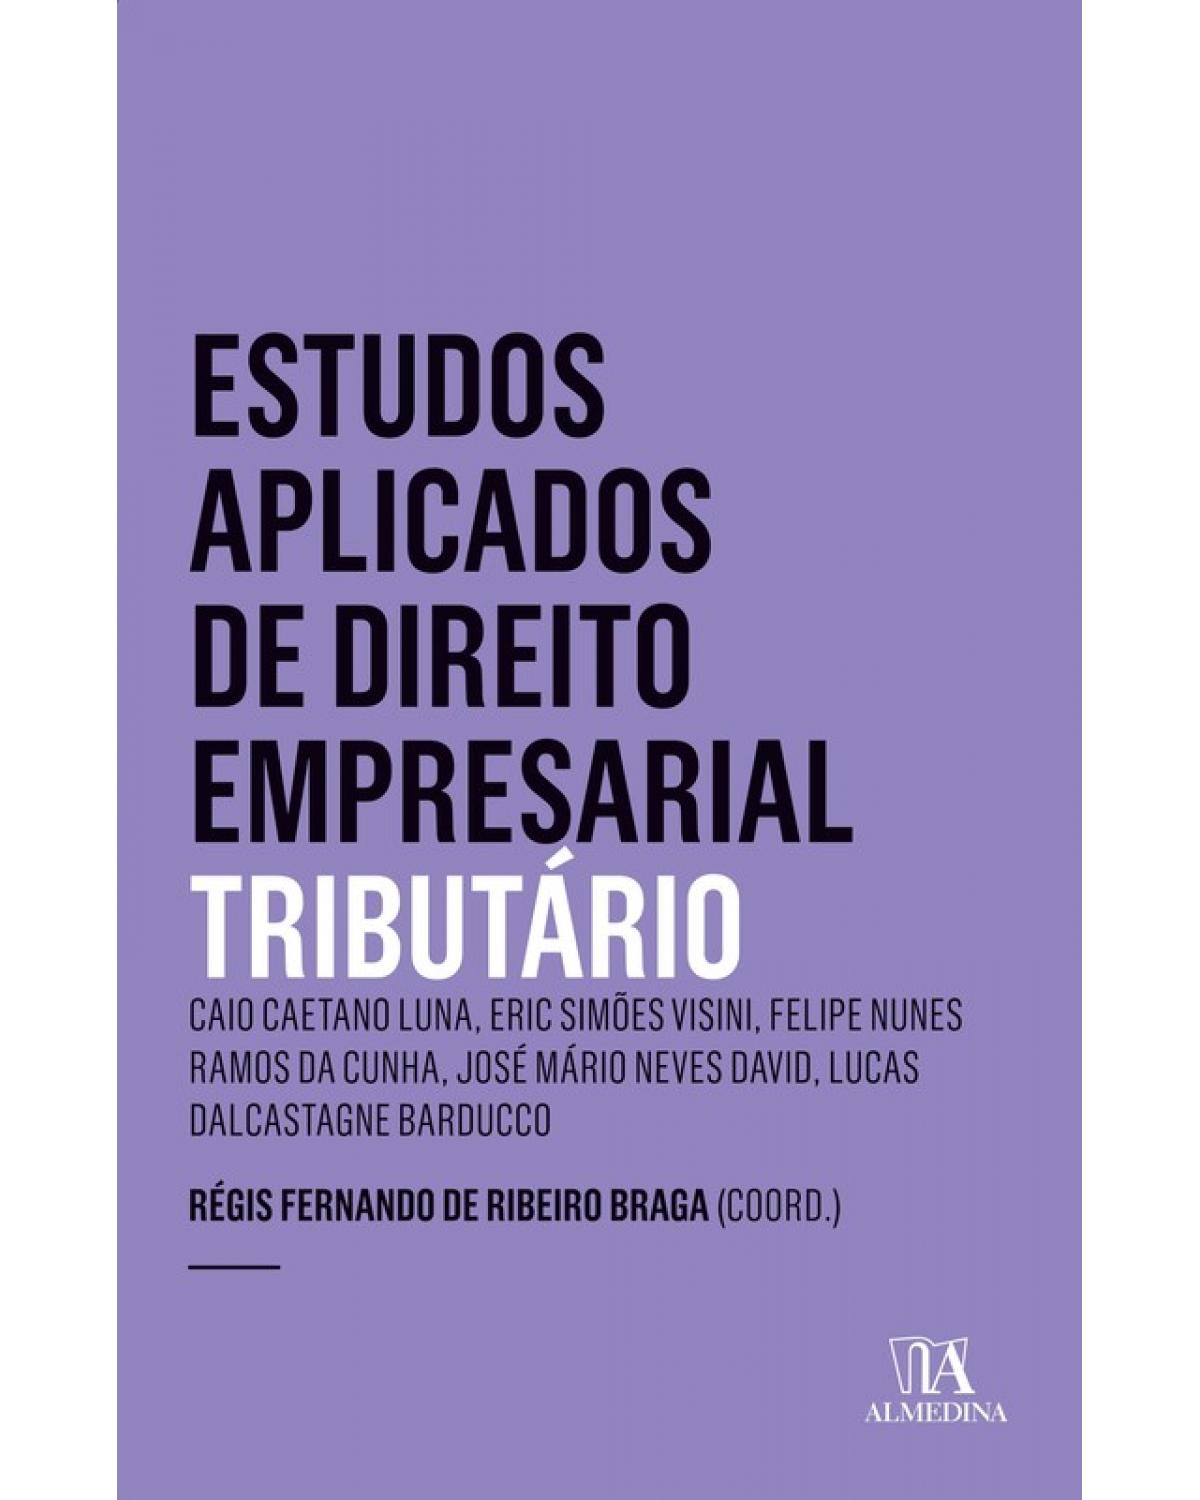 Estudos aplicados de direito empresarial - tributário - 1ª Edição | 2018